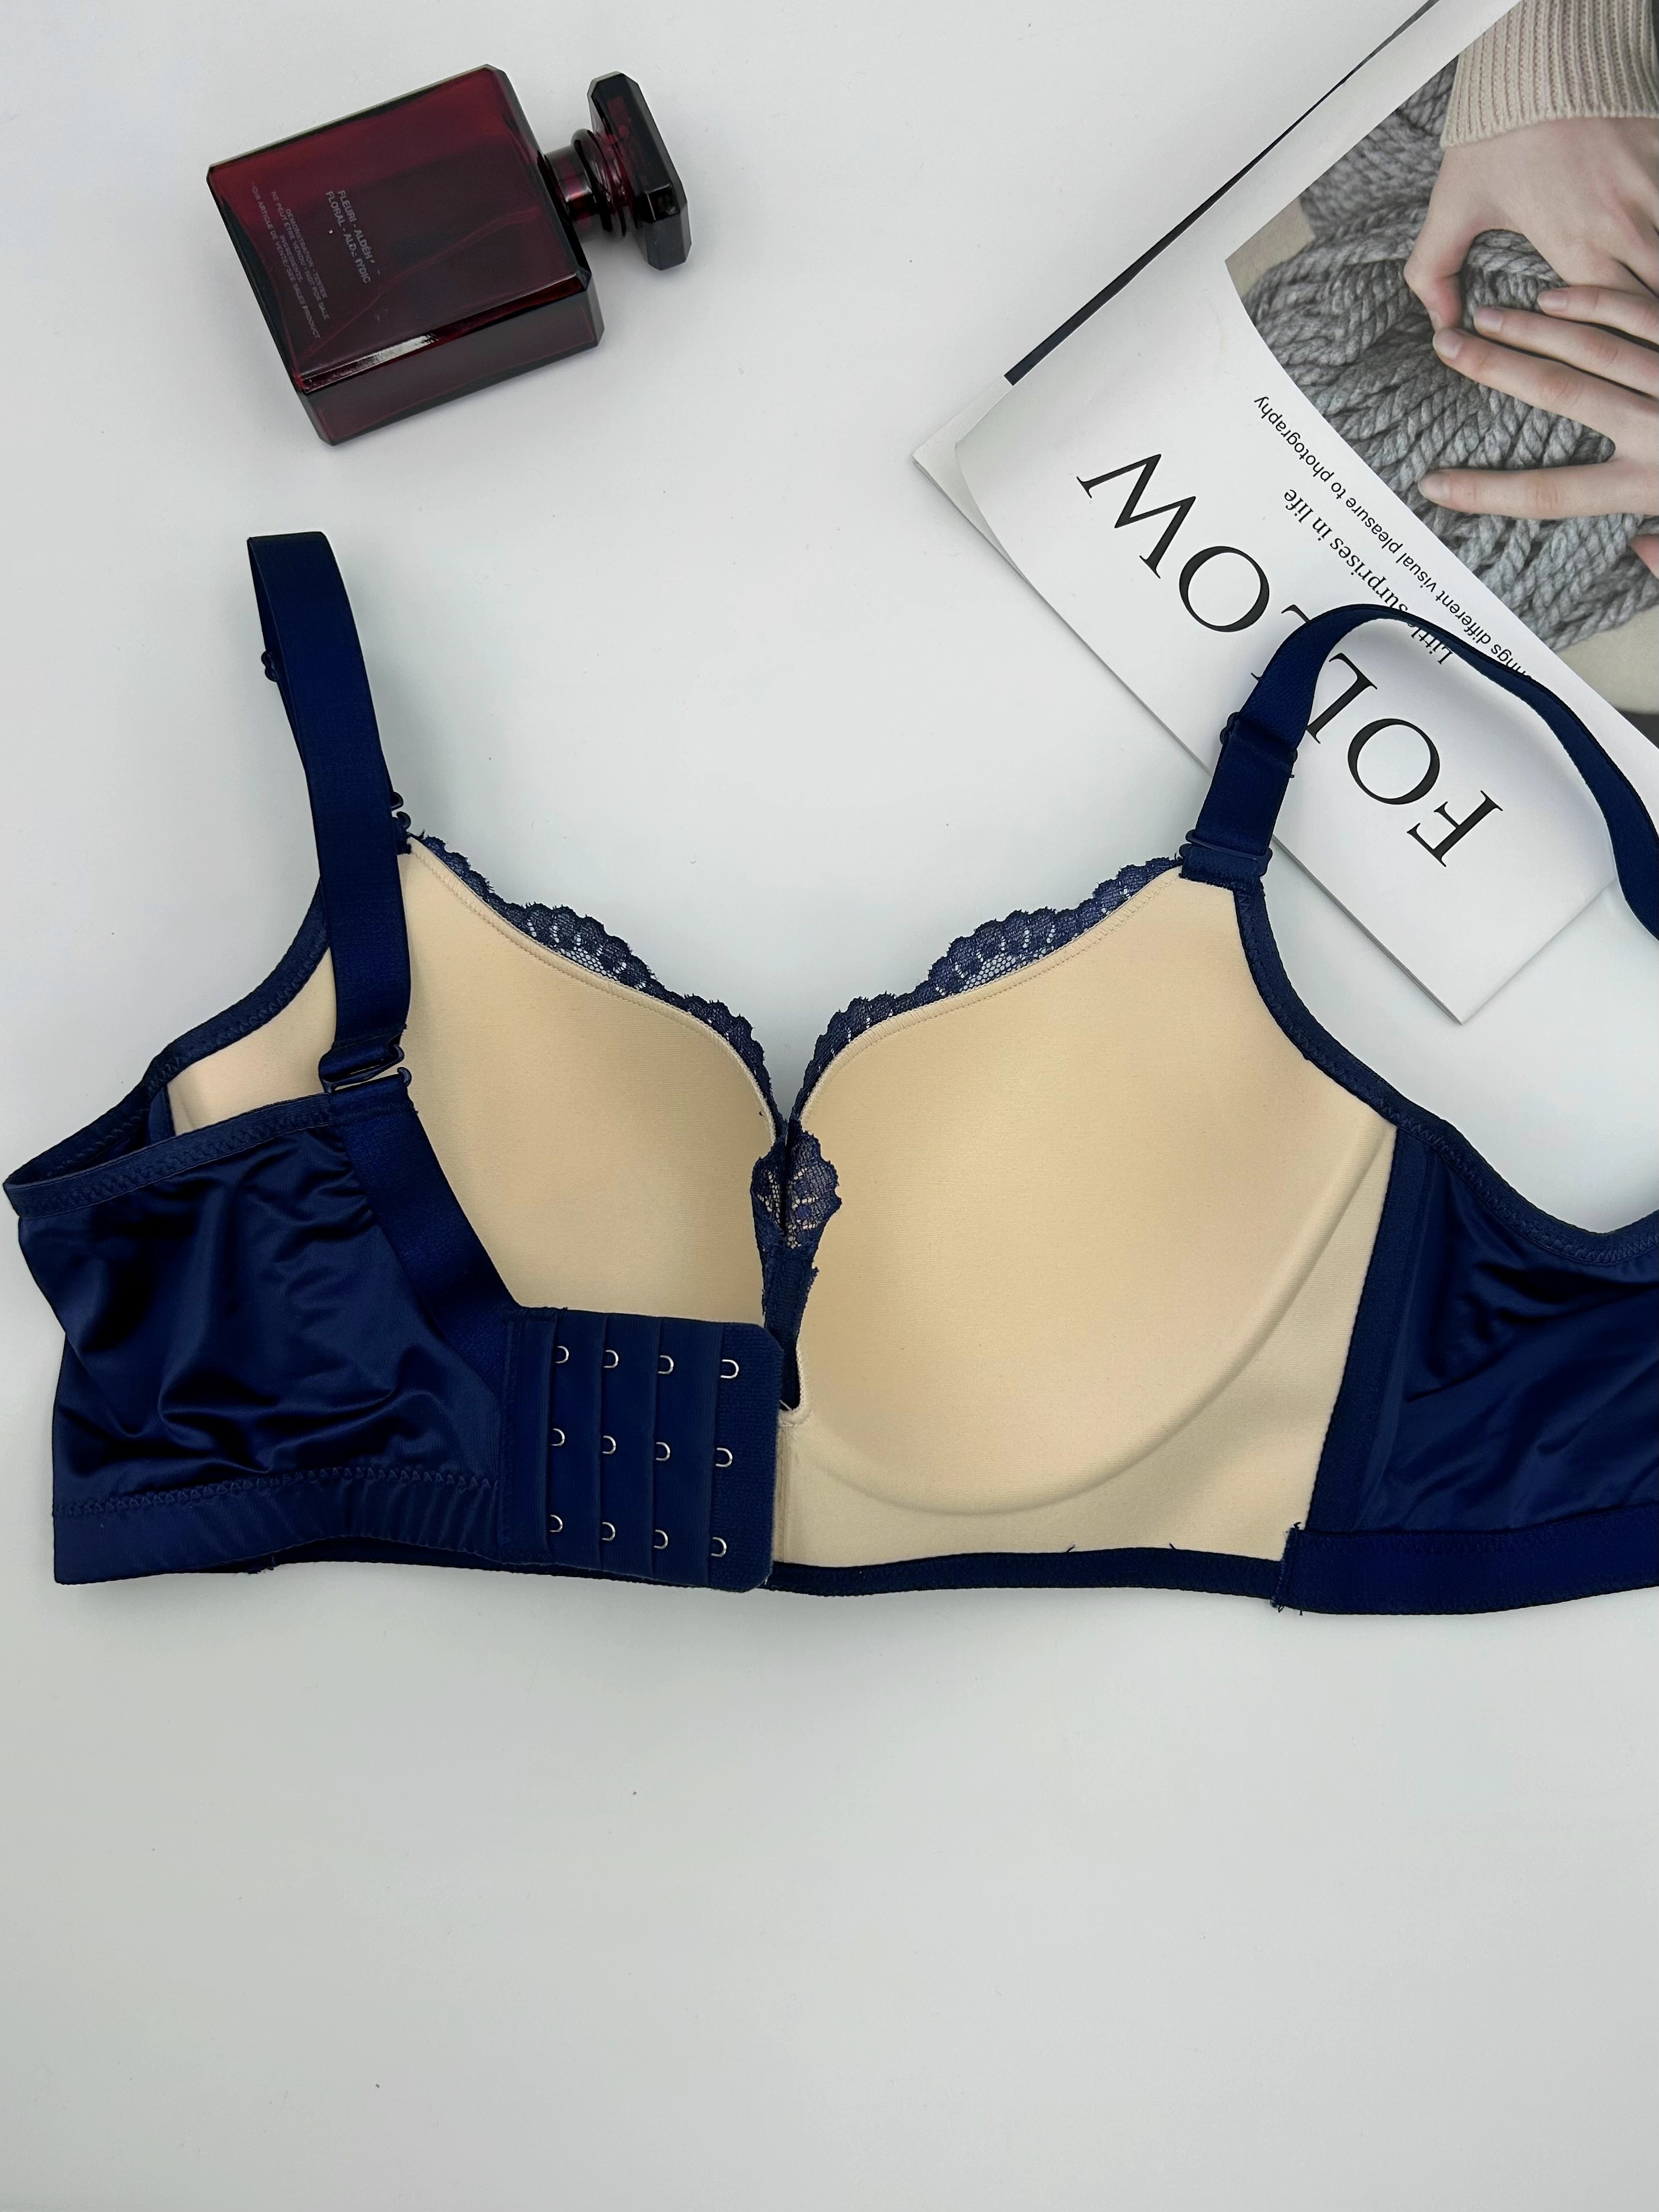 Women's Lingerie Set (Wireless Bra & Panties) In Navy Blue Lace